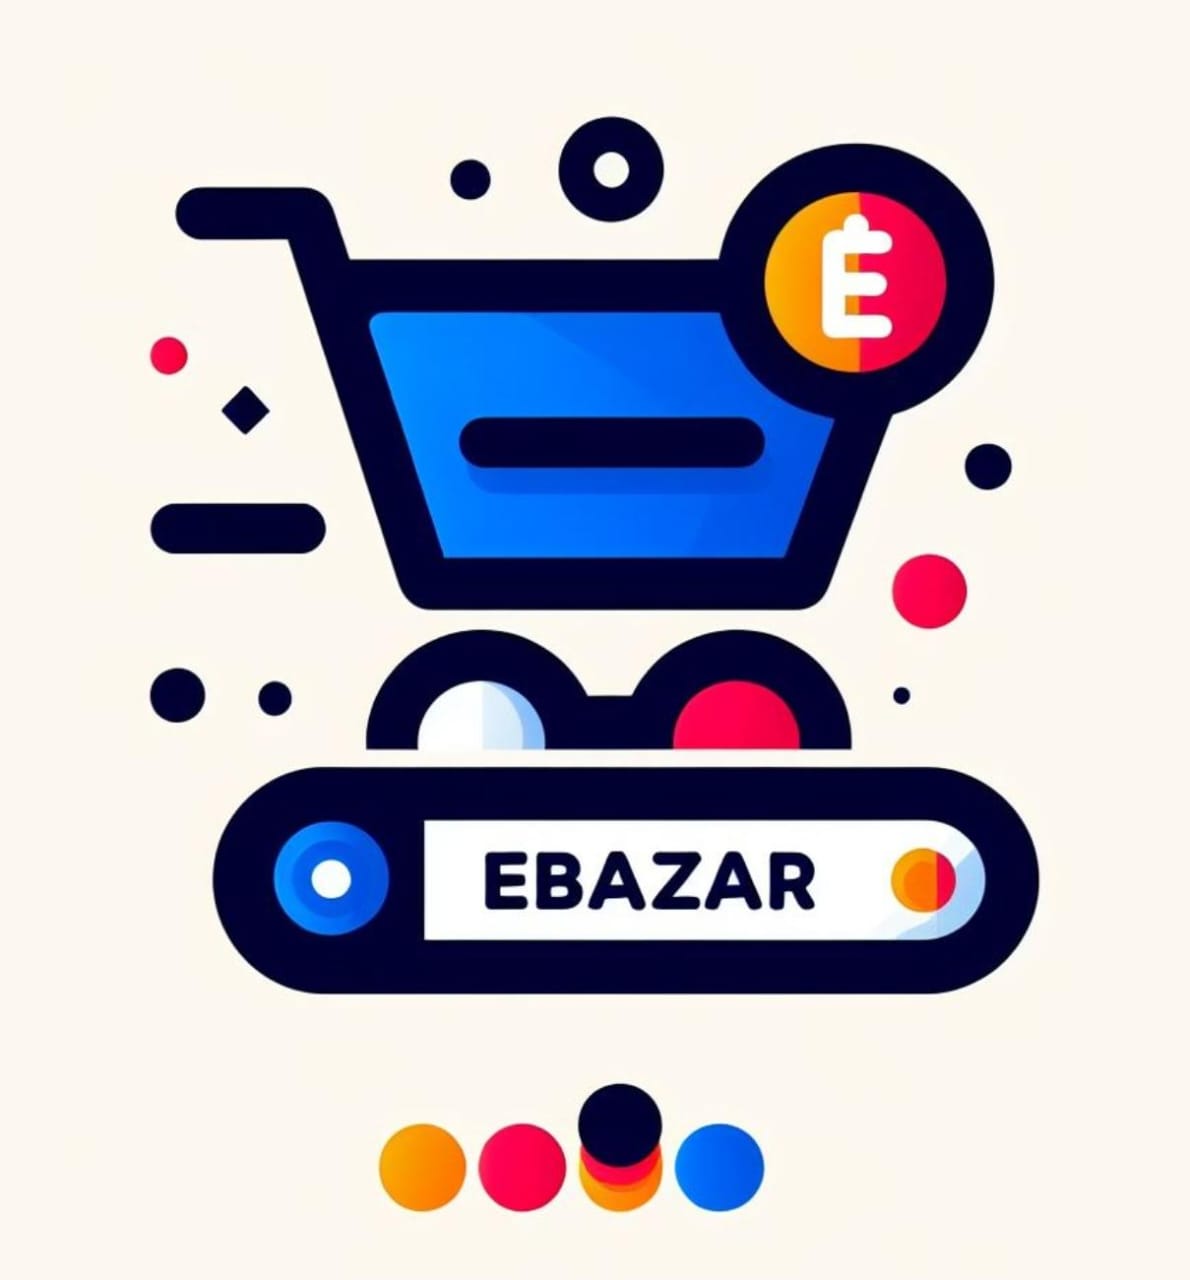 Ebazar